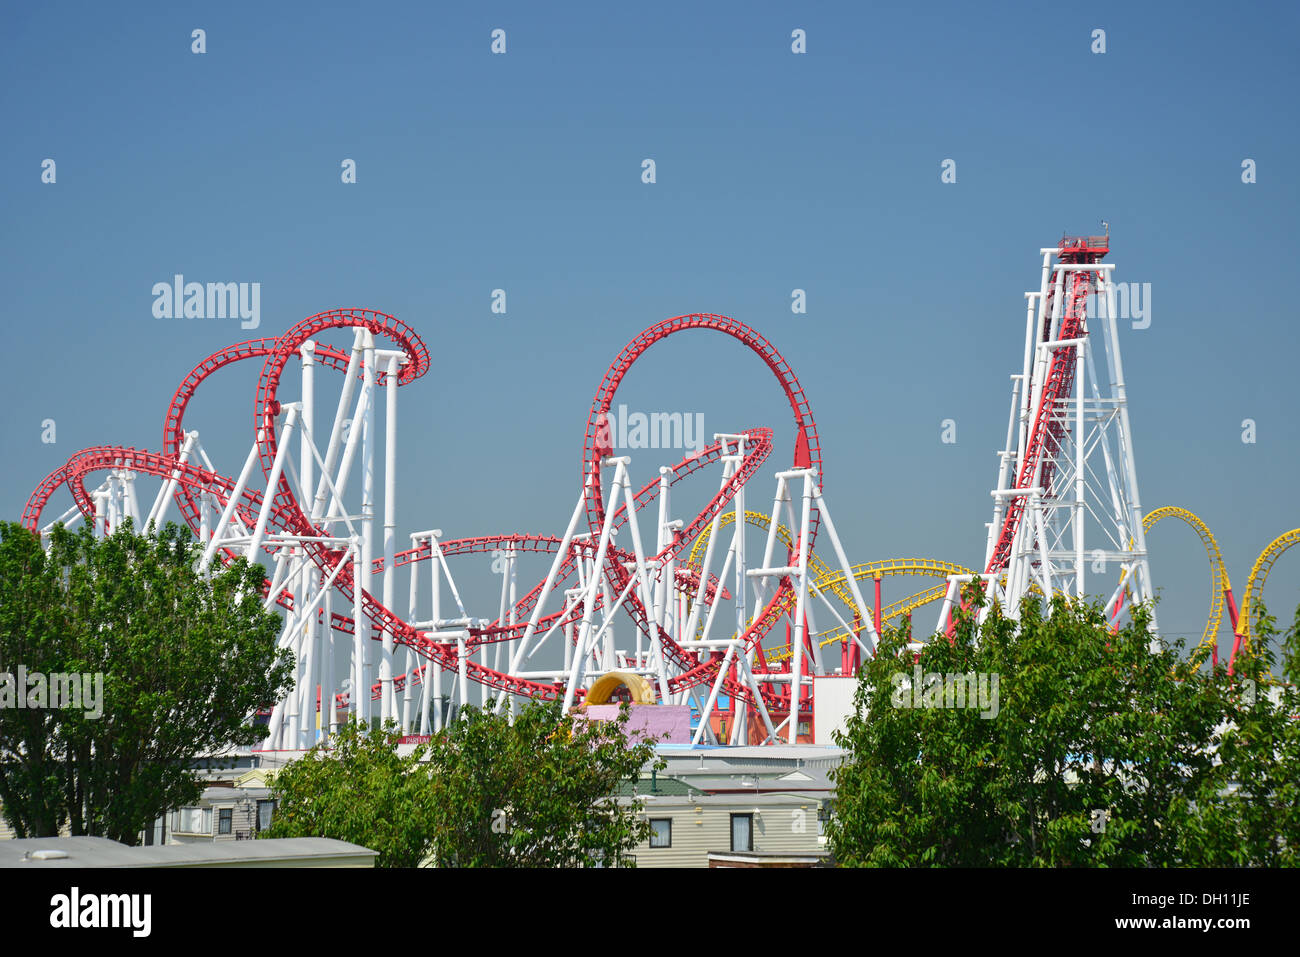 Le Millenium Rollercoaster à Fantasy Island, parc à thème, Ingoldmells Skegness, Lincolnshire, Angleterre, Royaume-Uni Banque D'Images